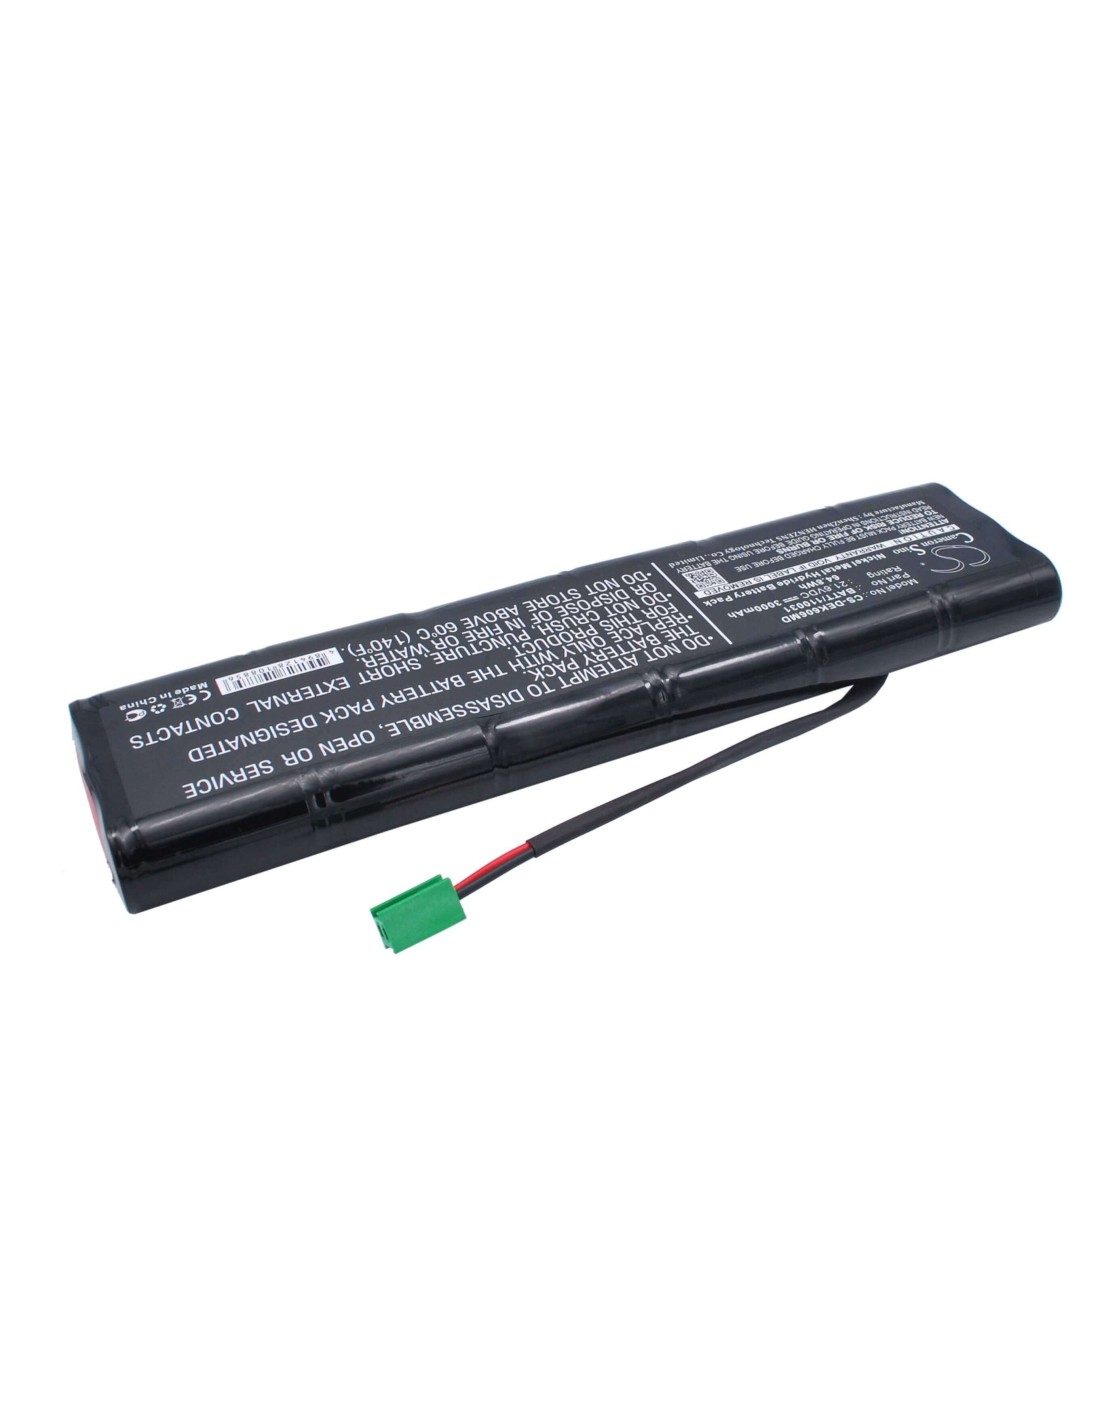 Battery for Dimeq Ek606 21.60V, 3000mAh - 64.80Wh